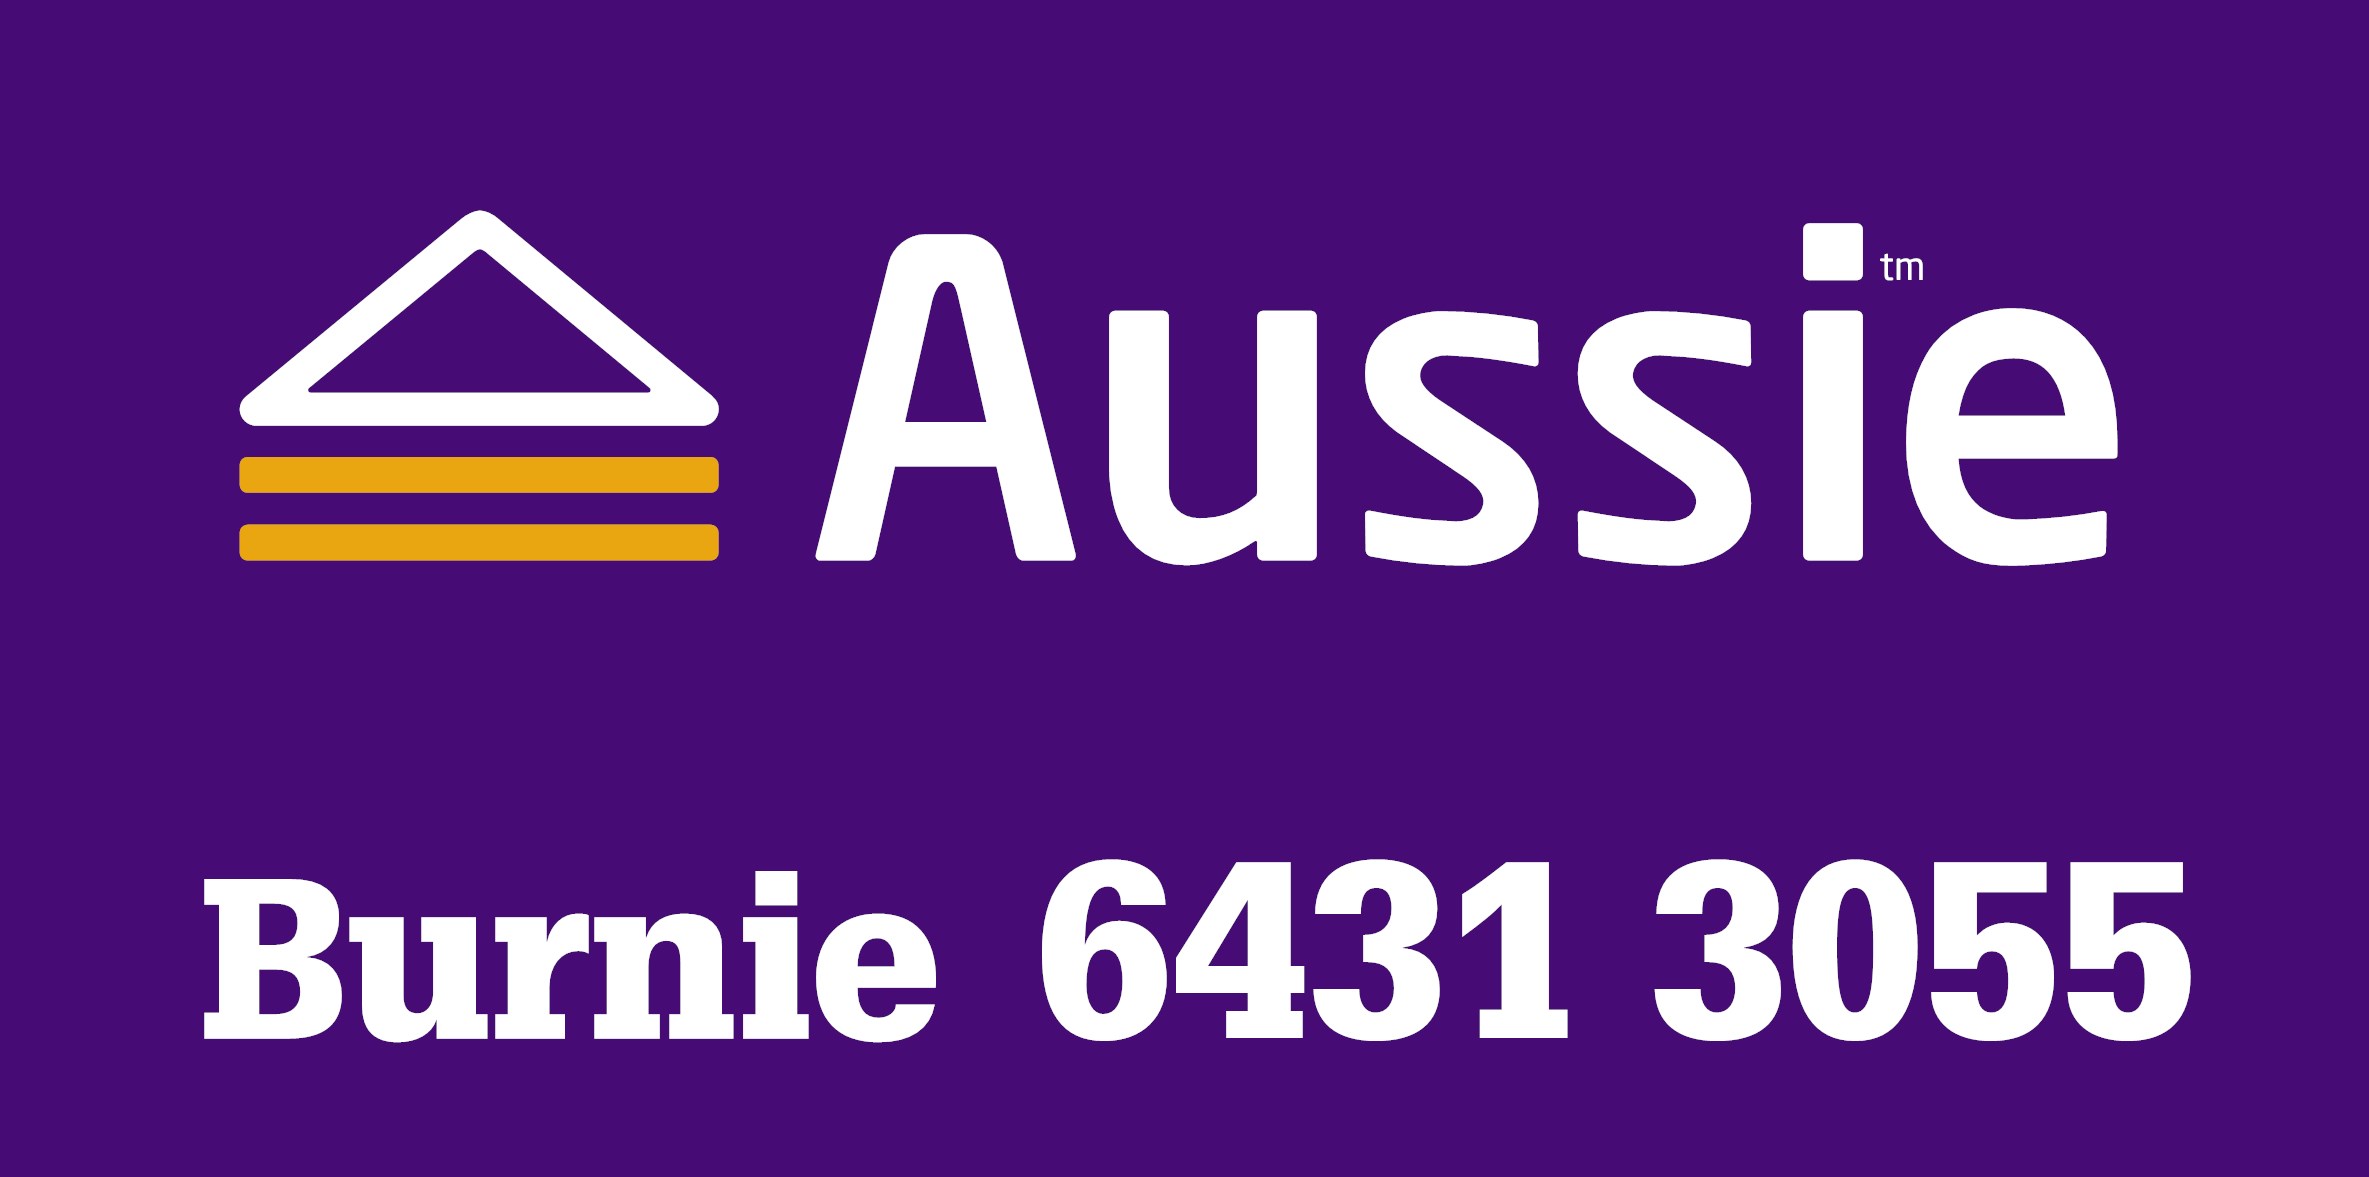 Aussie Burnie Logo